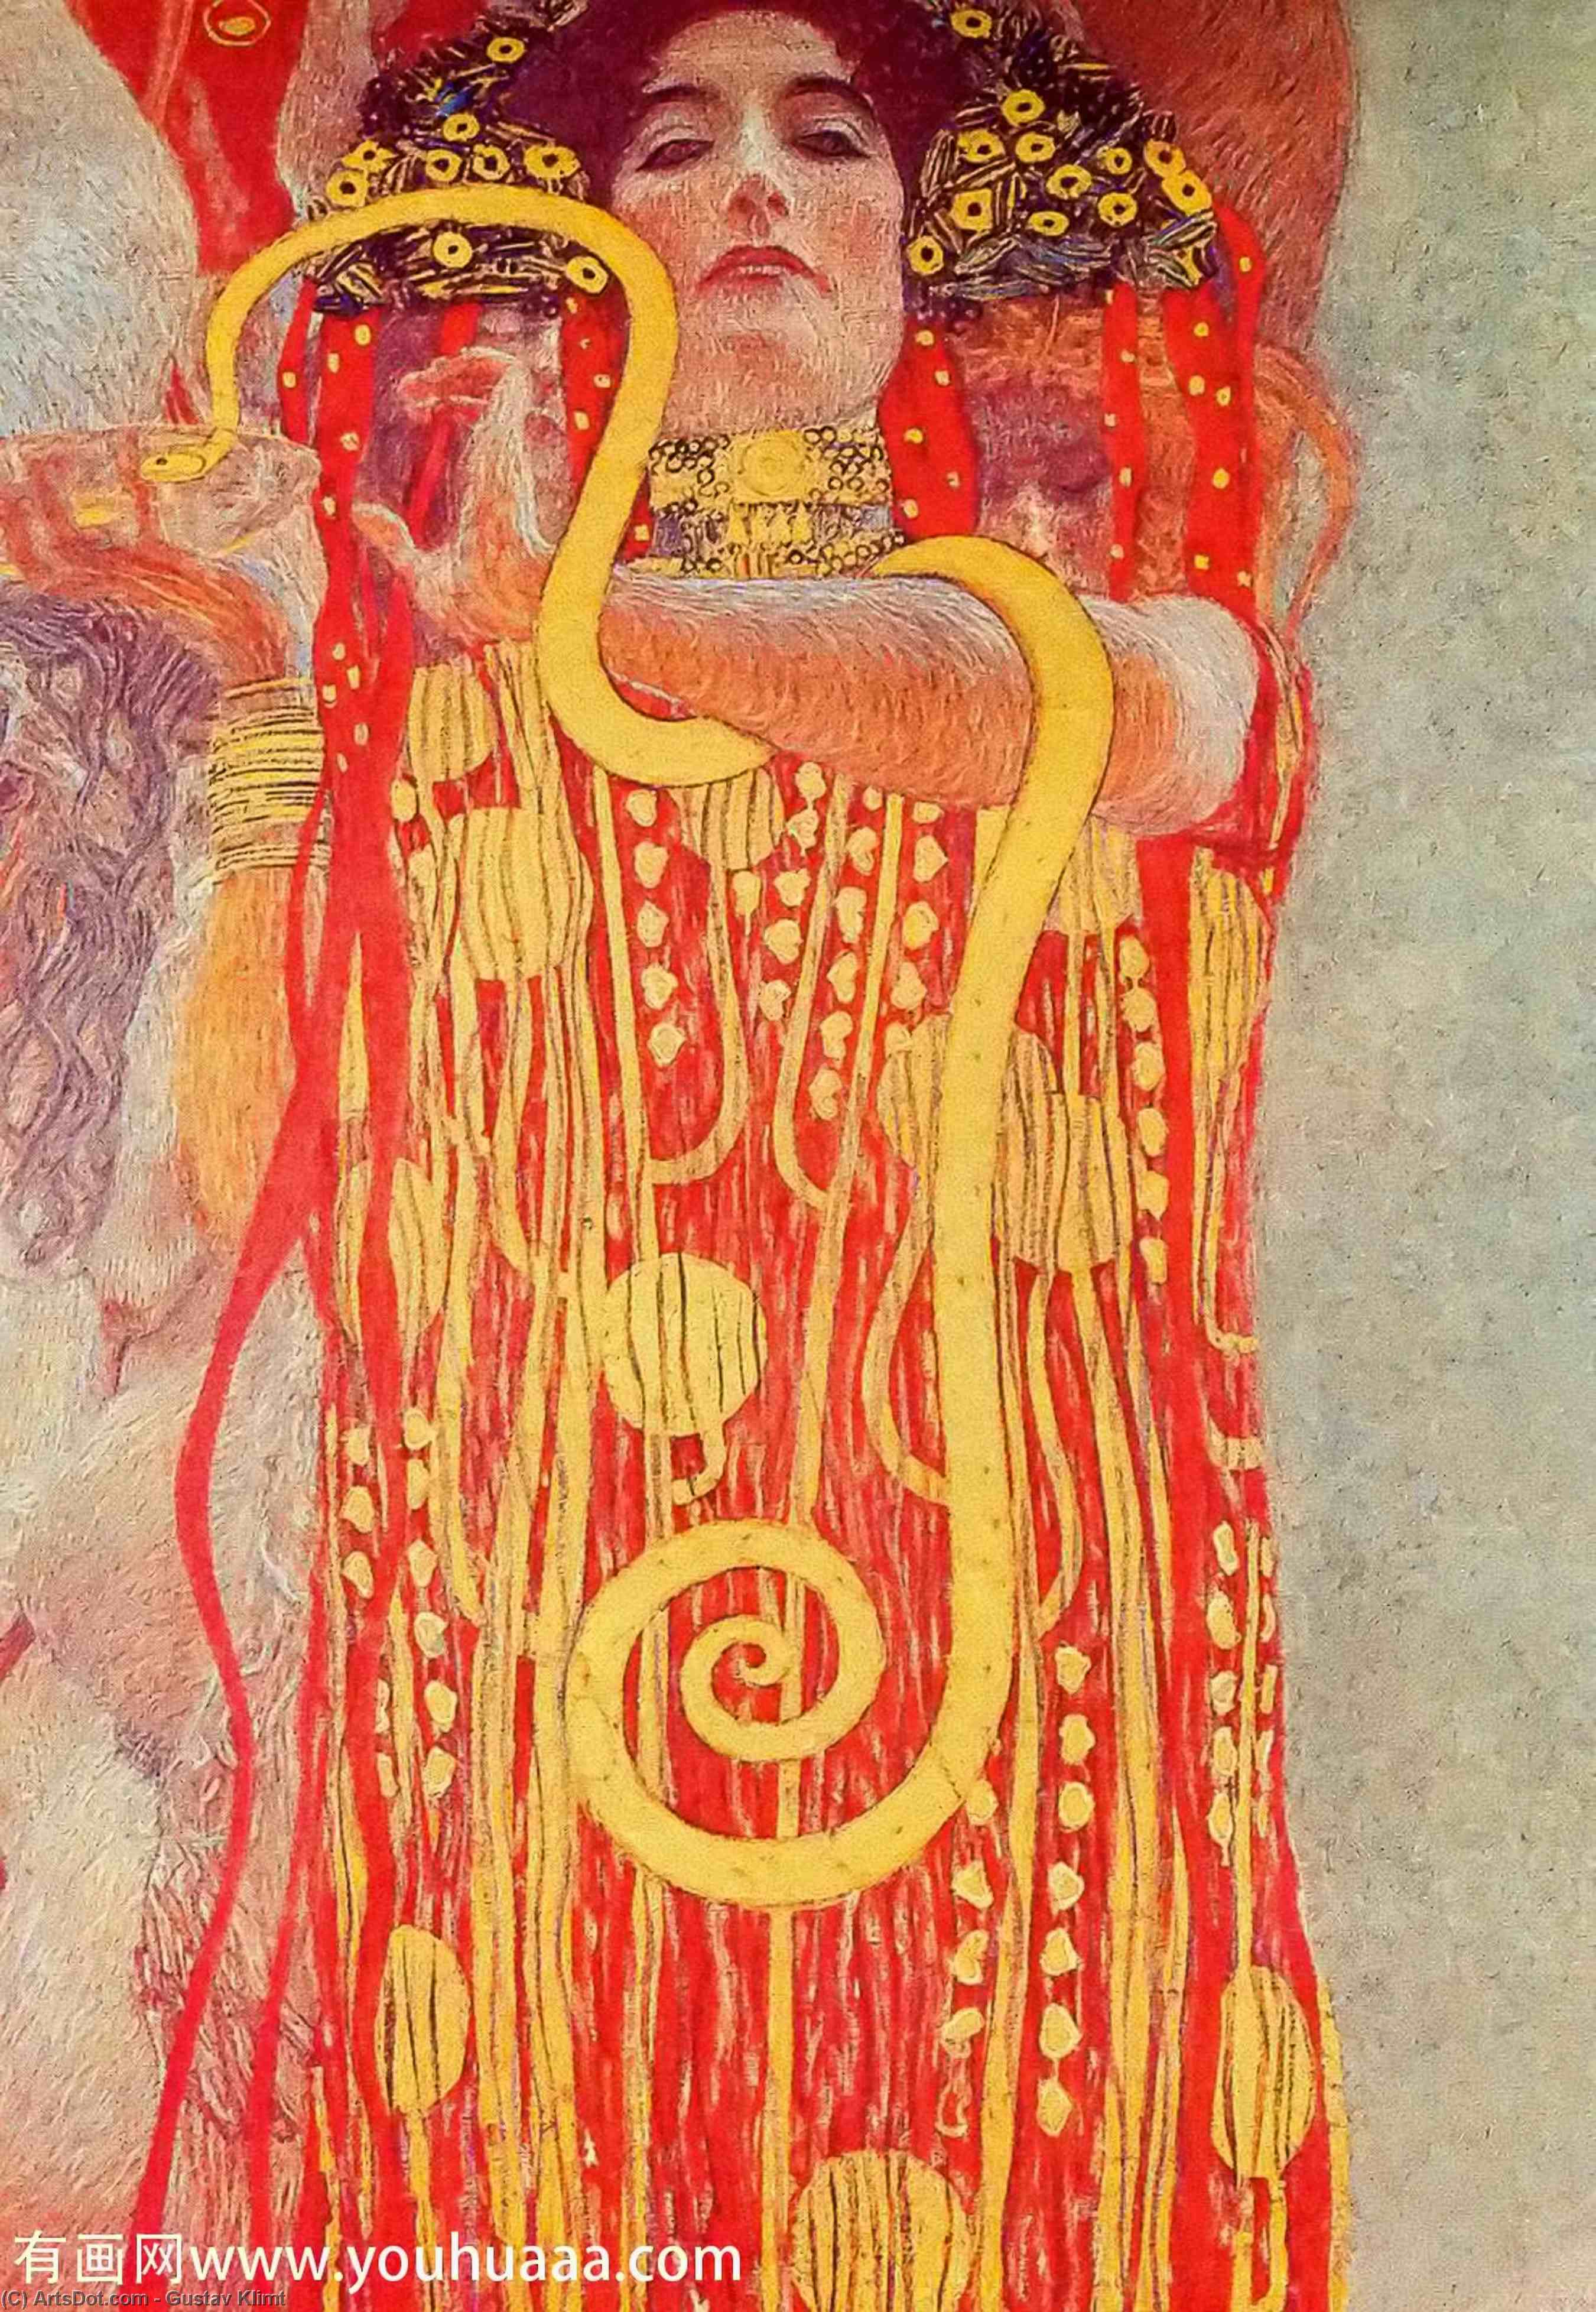 Wikoo.org - موسوعة الفنون الجميلة - اللوحة، العمل الفني Gustav Klimt - University of Vienna Ceiling Paintings (Medicine), detail showing Hygieia